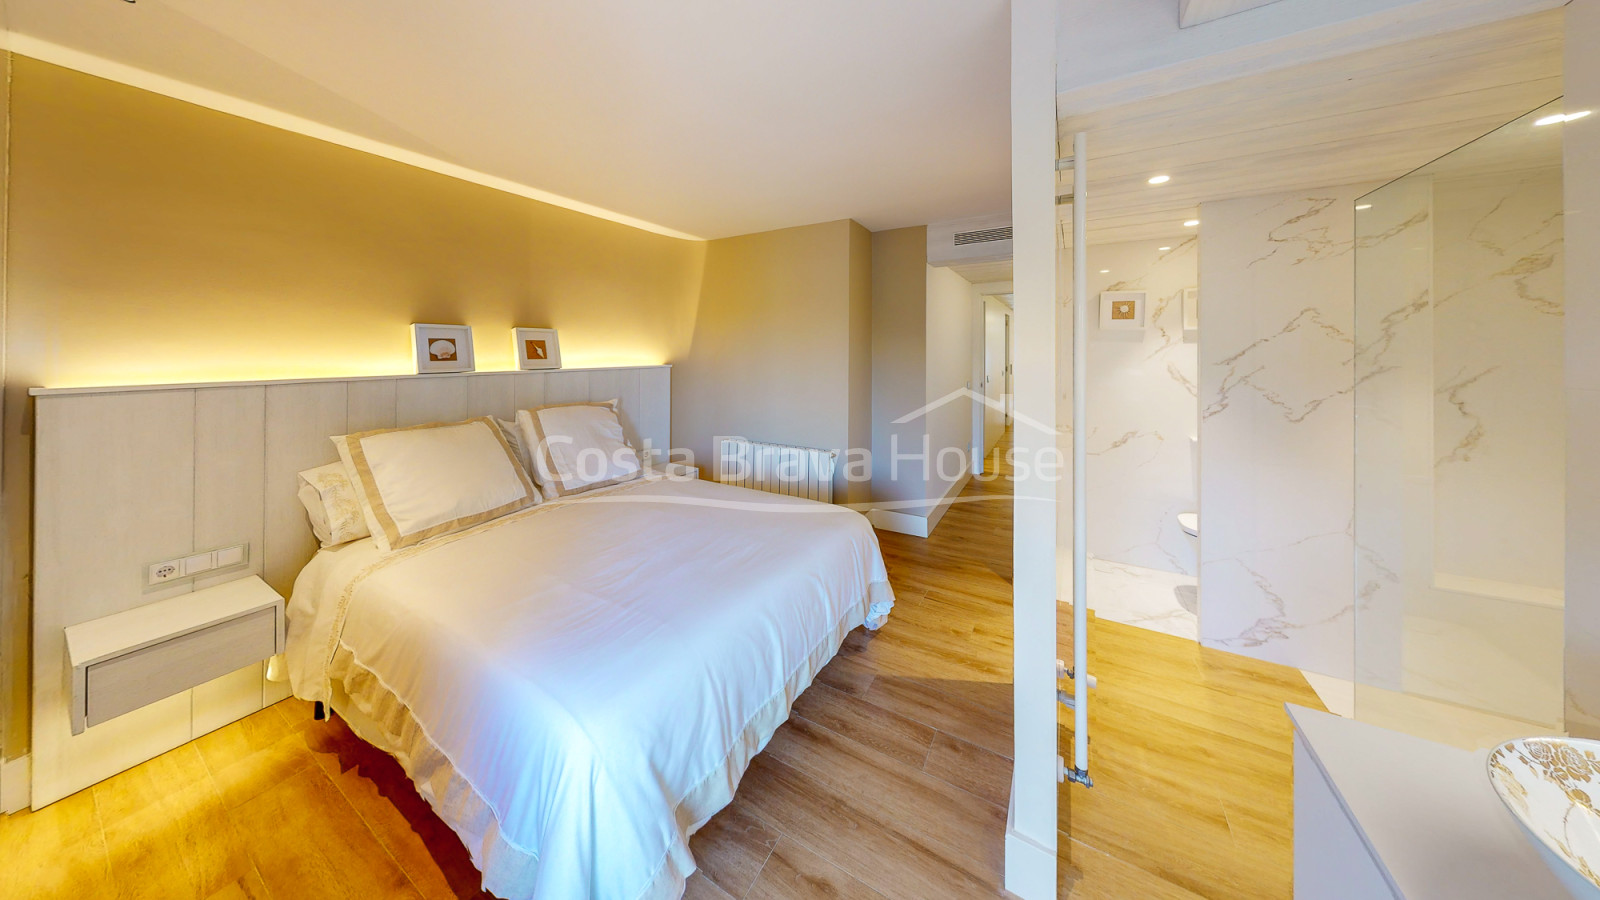 Apartamento de alto standing en venta en Platja d'Aro, justo al pie de la playa y el mar